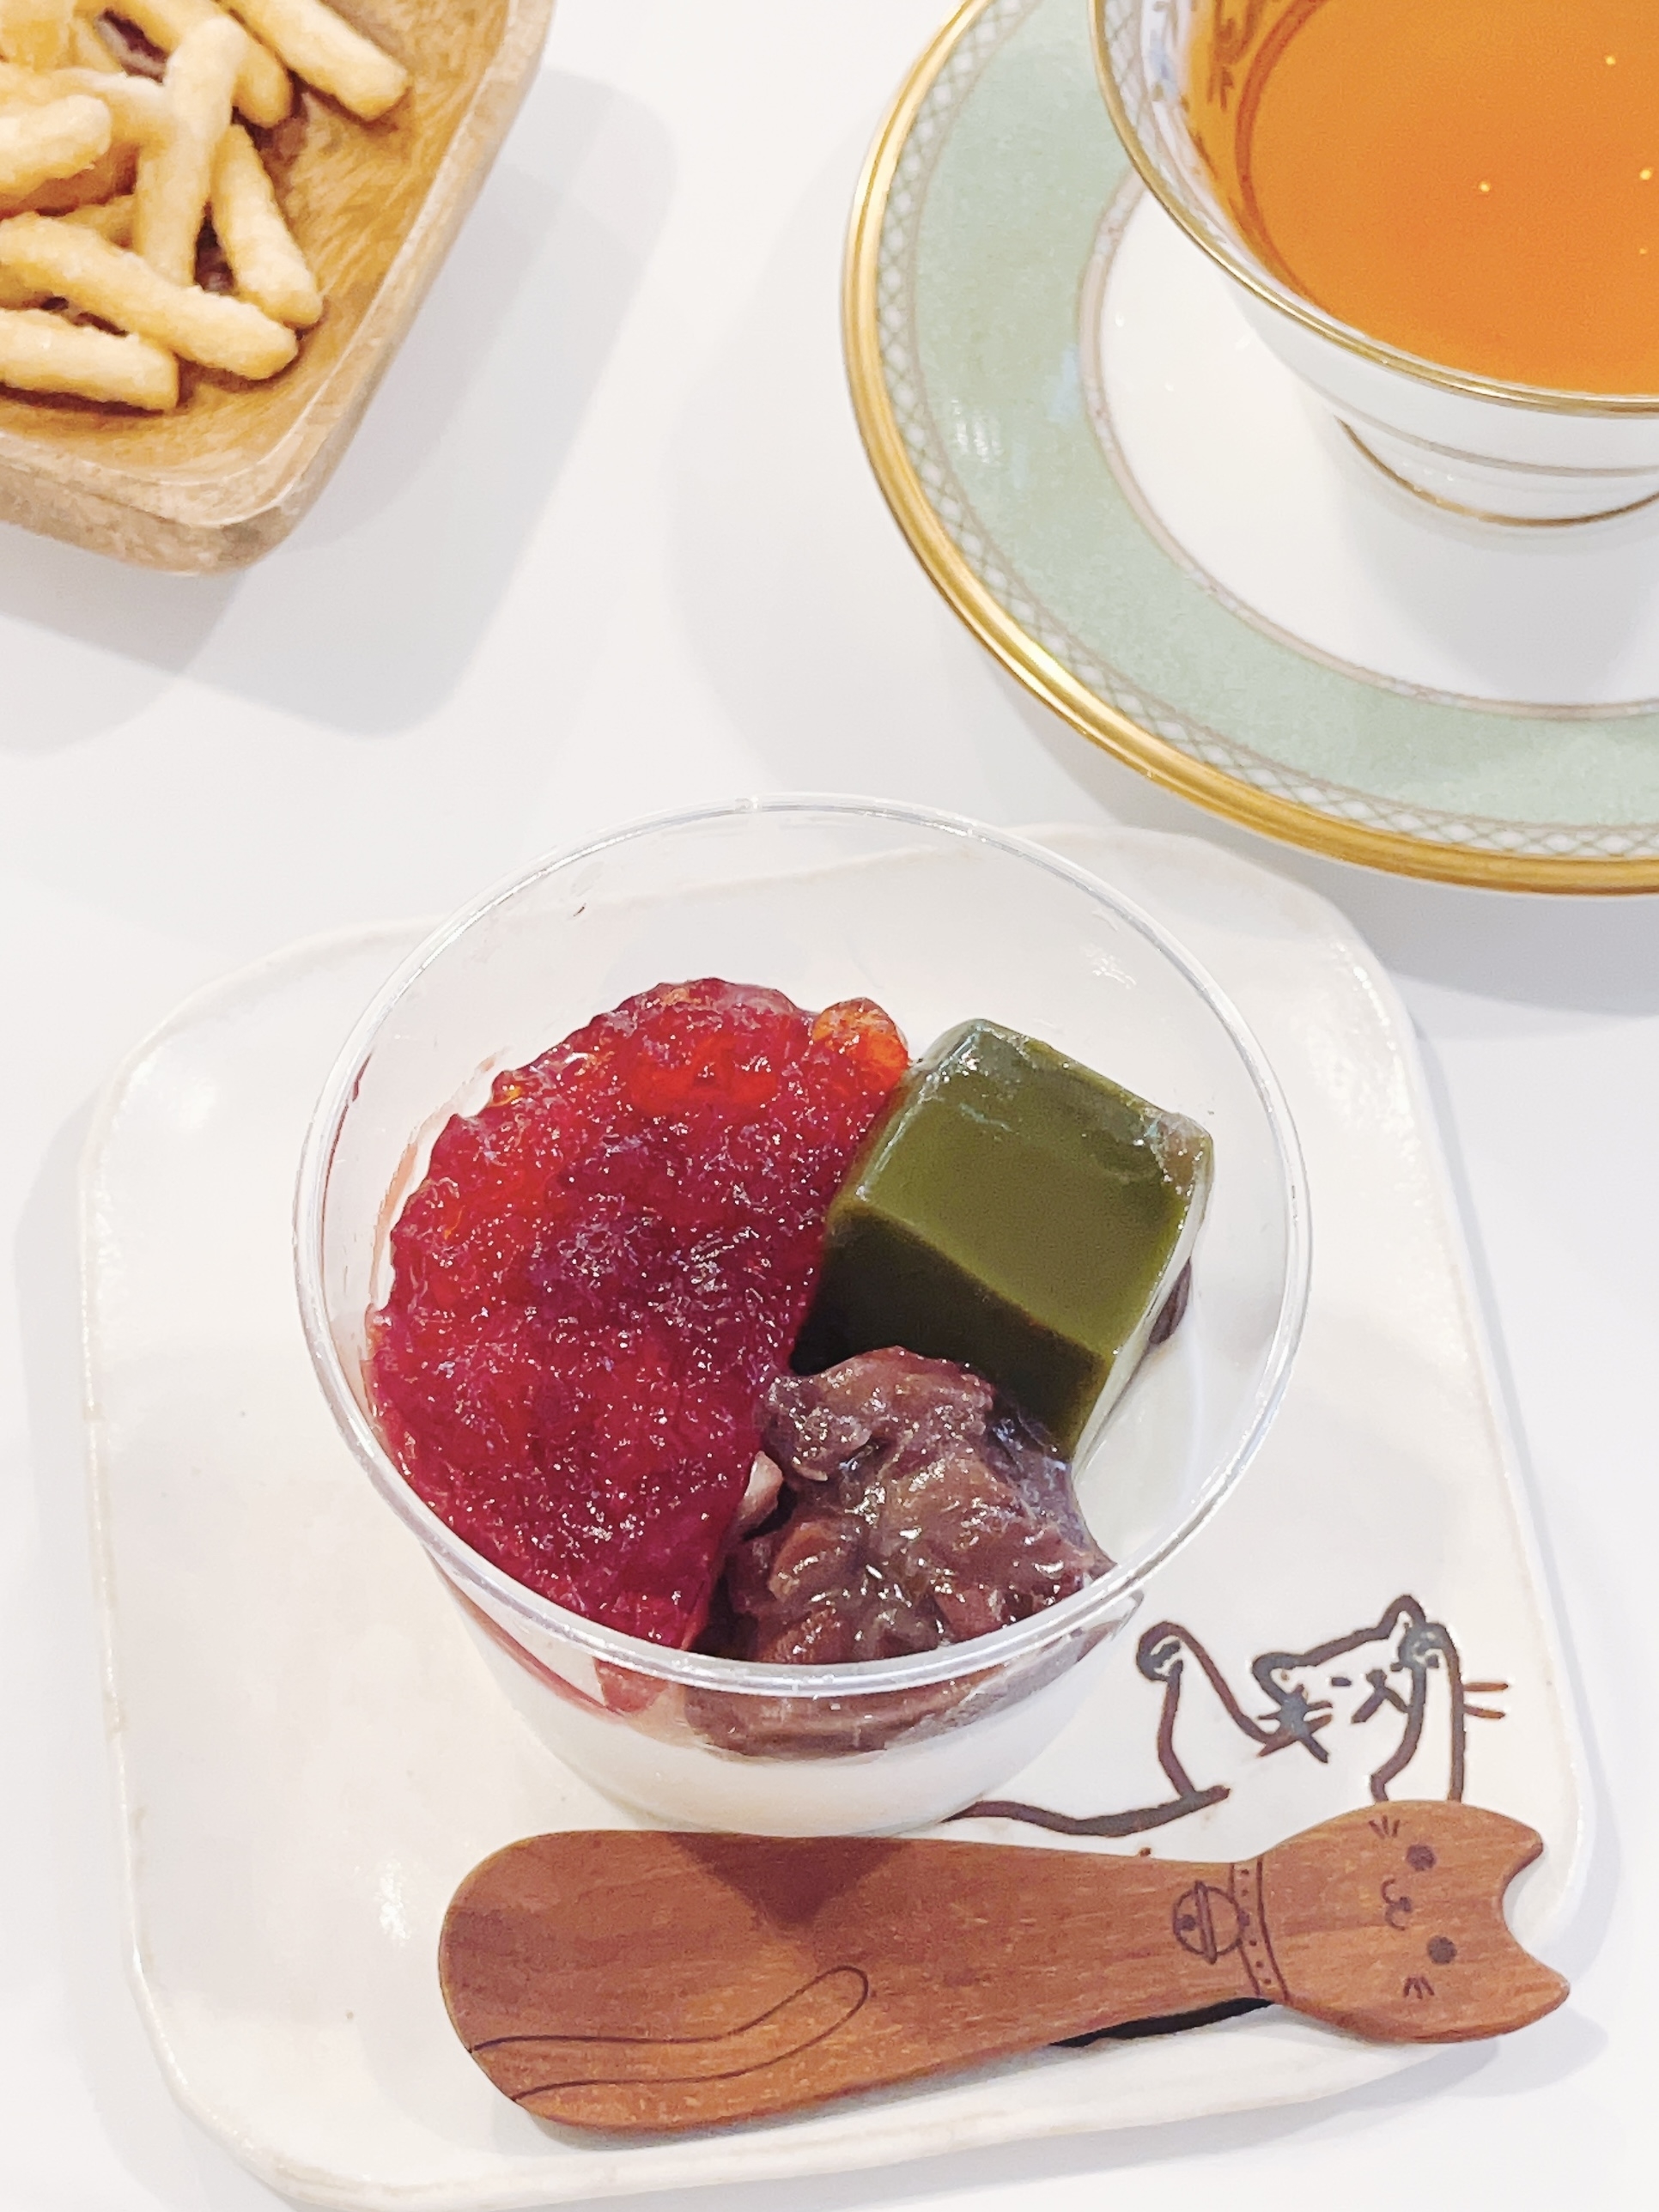 成城石井のおすすめスイーツ「苺と抹茶ゼリーのココナッツブラマンジェ」